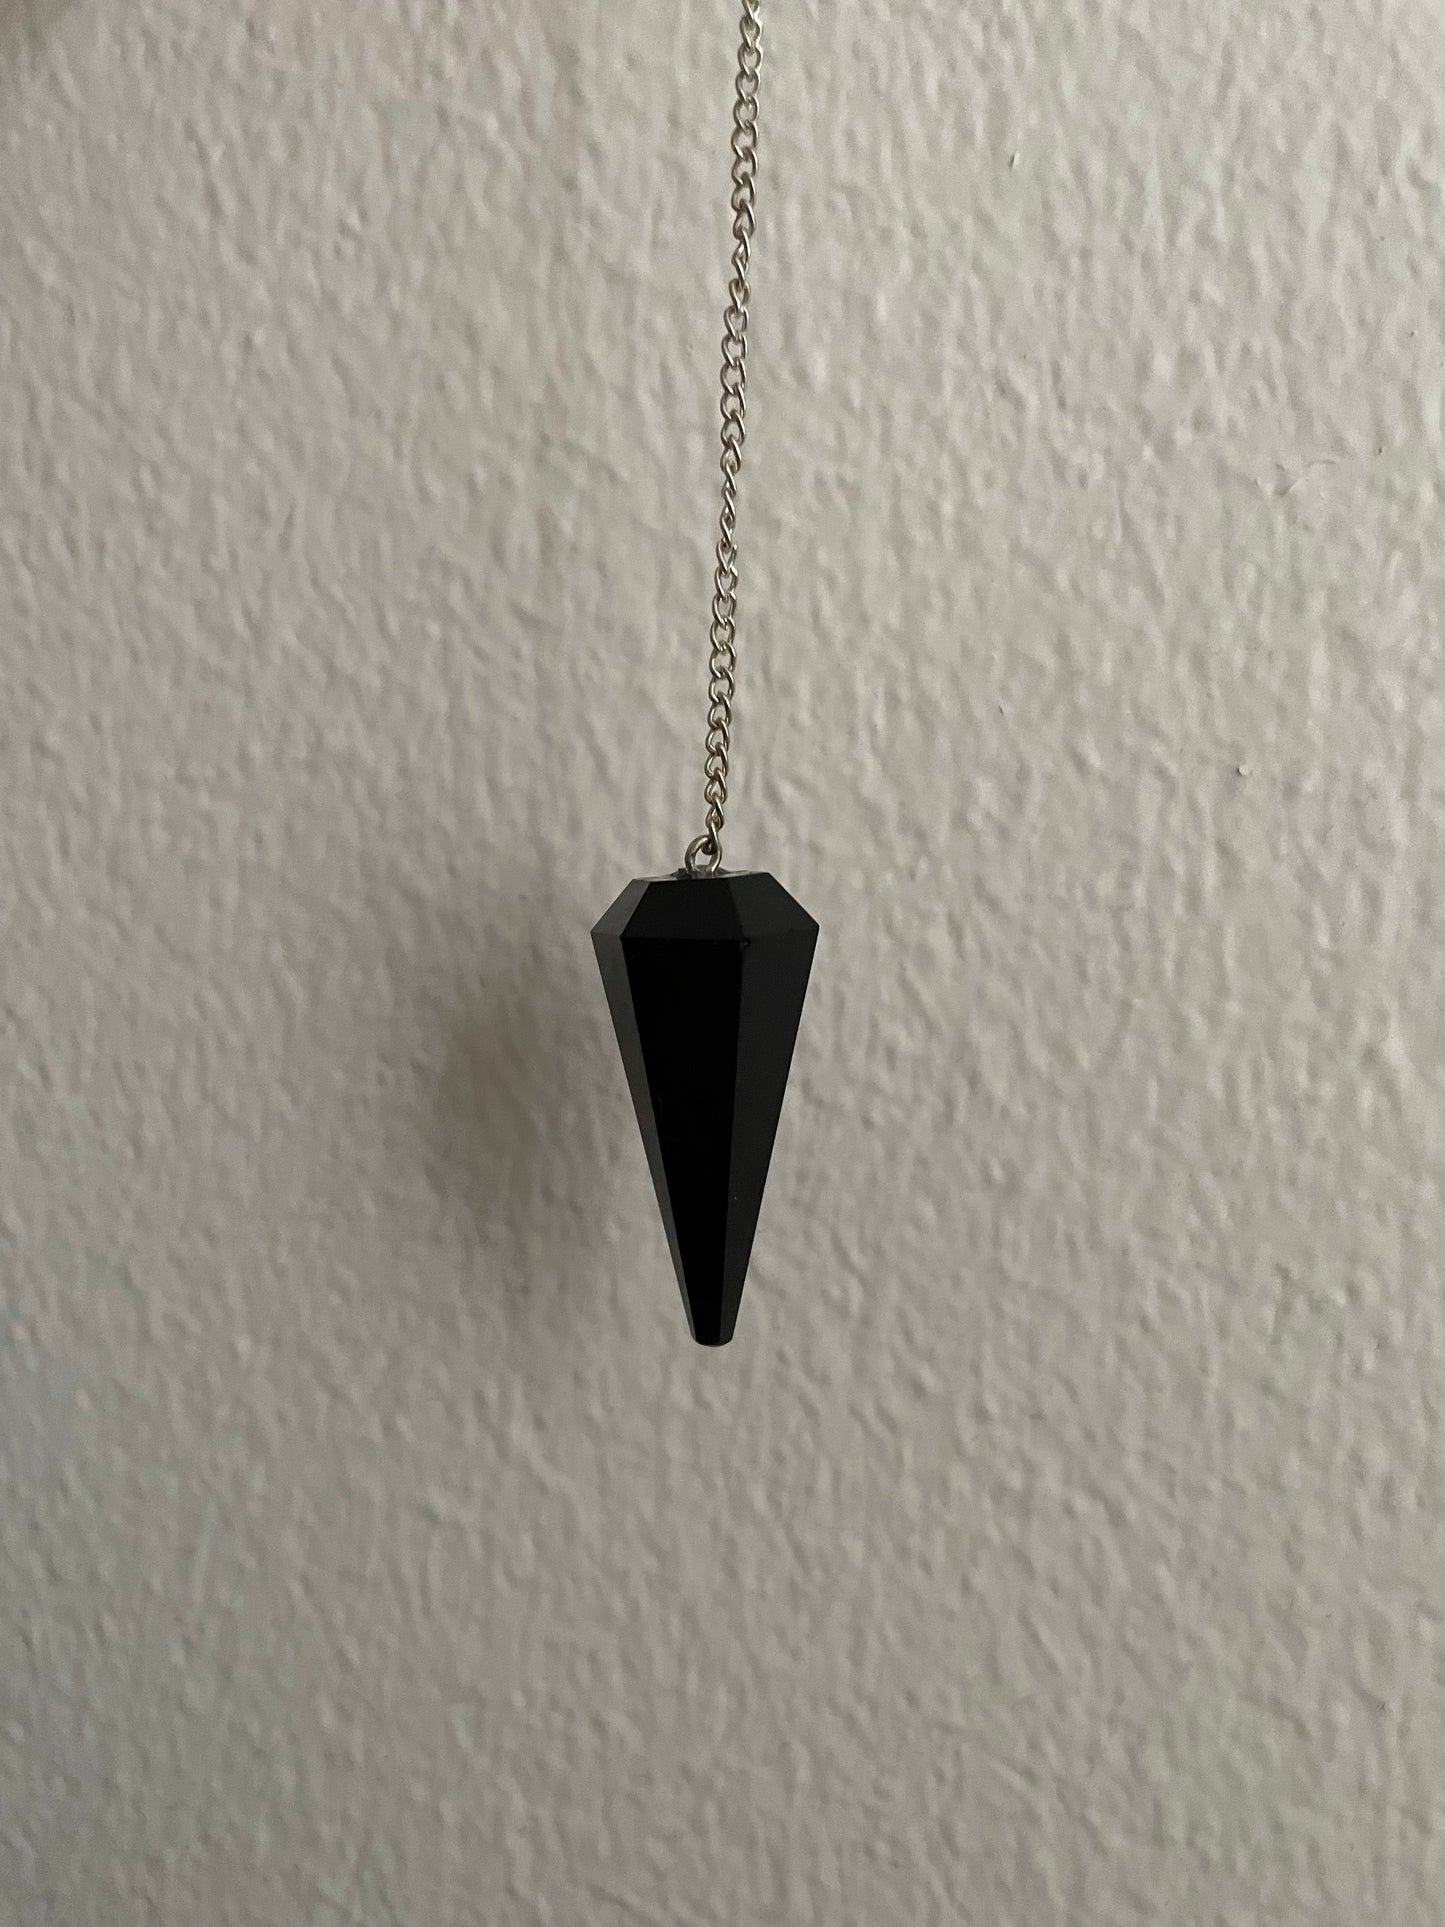 Black Obsidian Crystal Pendulum